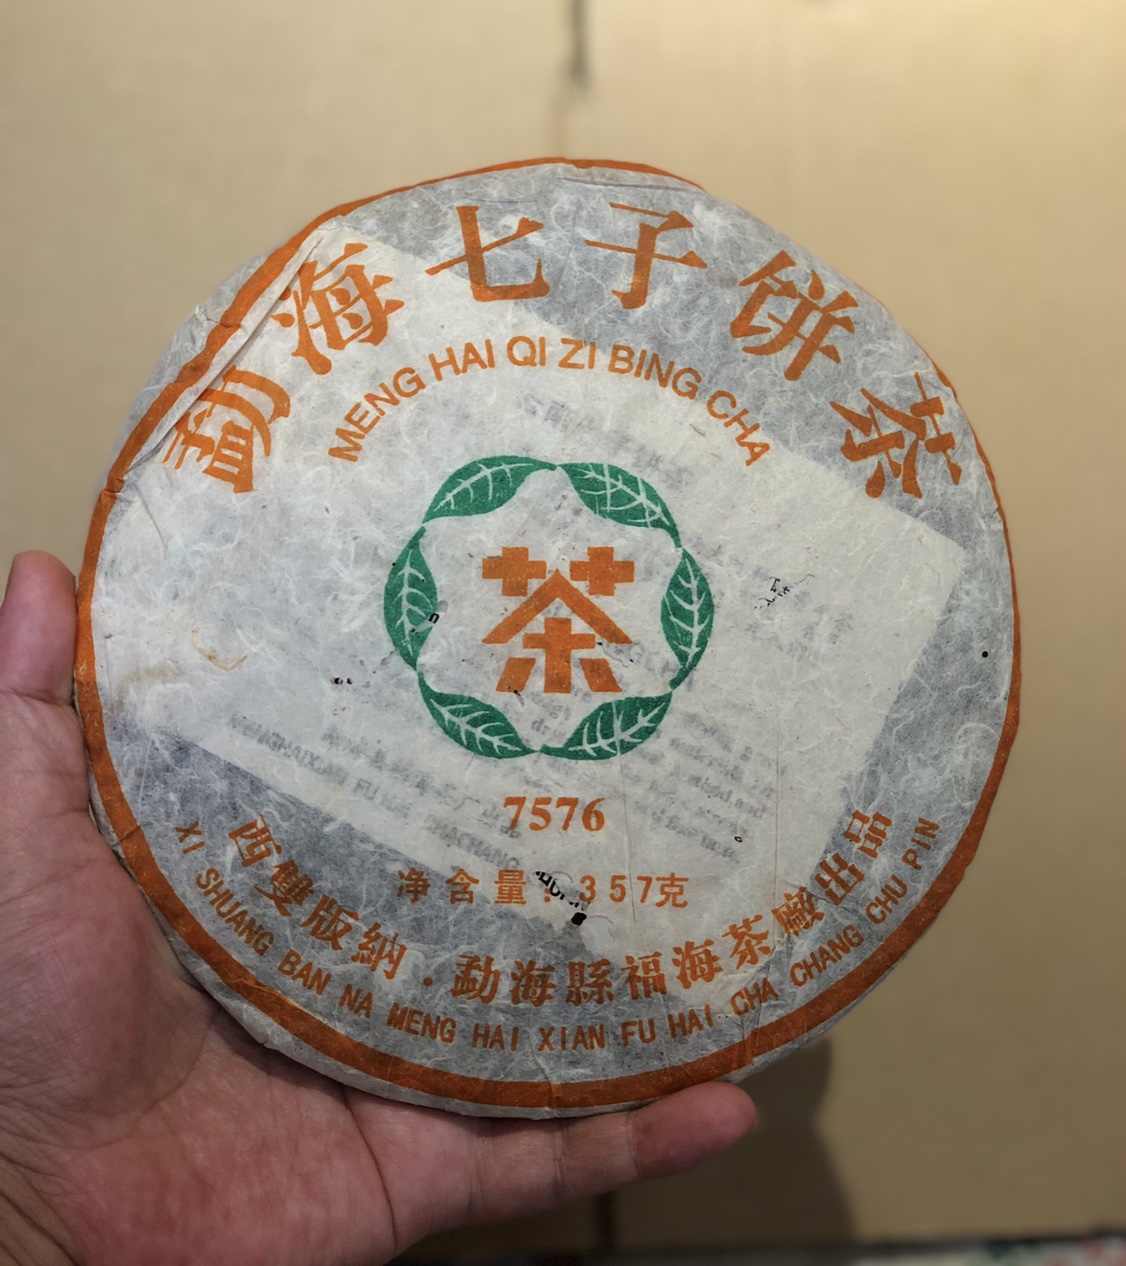 2005年福海茶厂7576勐海味干仓熟茶云南七子饼茶